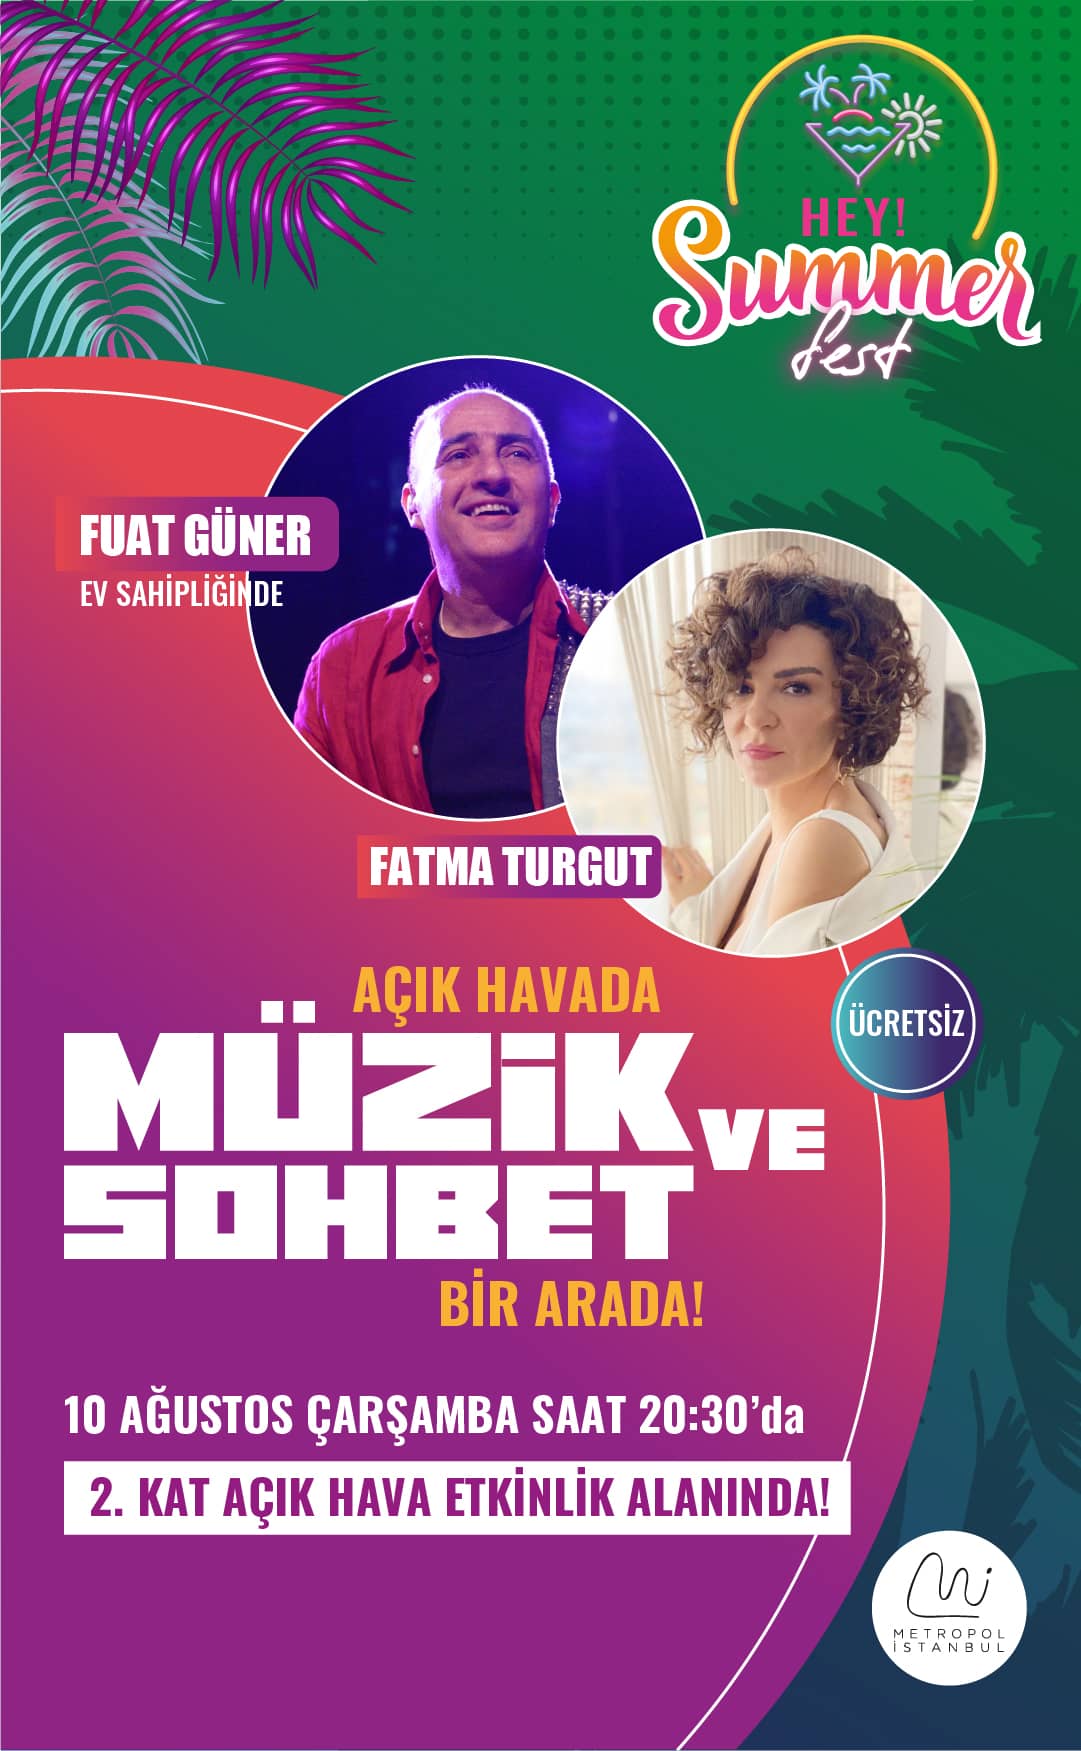 Hey! Summer Fest ile Metropol İstanbul’a kusursuz sesi ile Fatma Turgut geliyoooorrr!